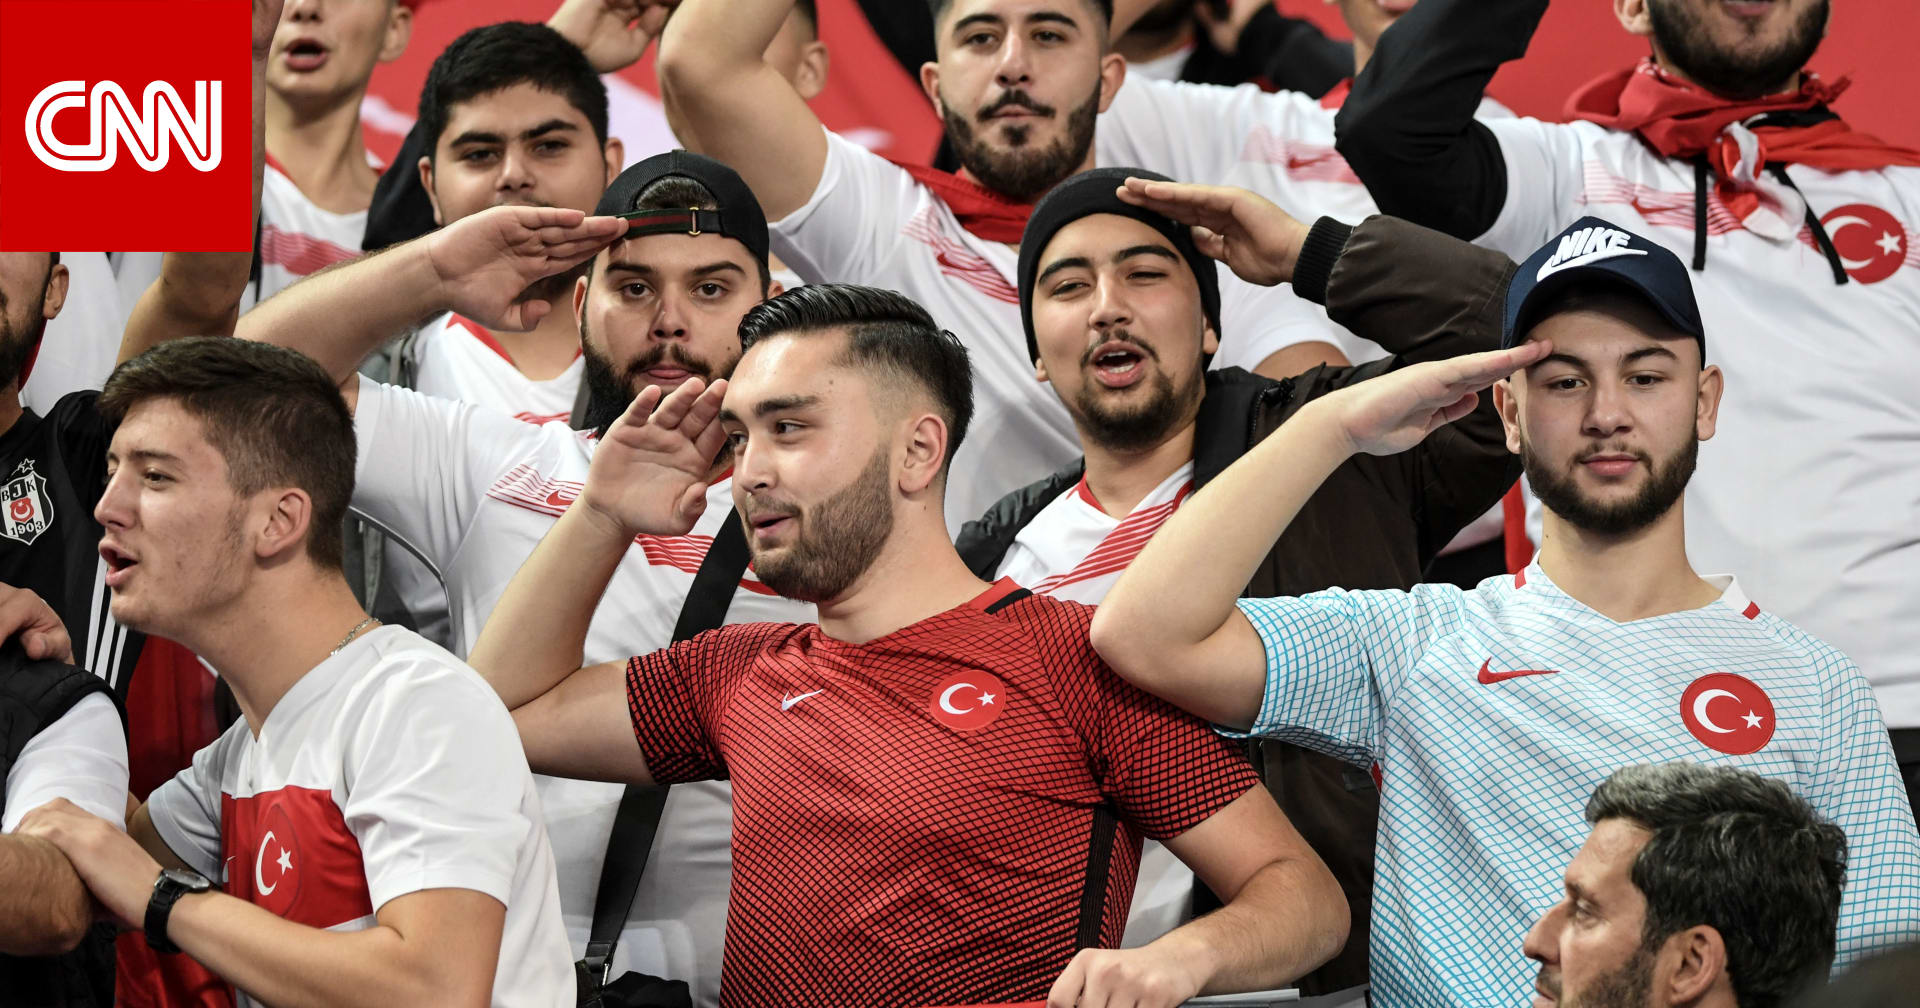 لاعبو تركيا يثيرون غضبا في أوروبا بسبب احتفال  التحية العسكرية .. وسياسي فرنسي: جنود الأعداء - CNN Arabic